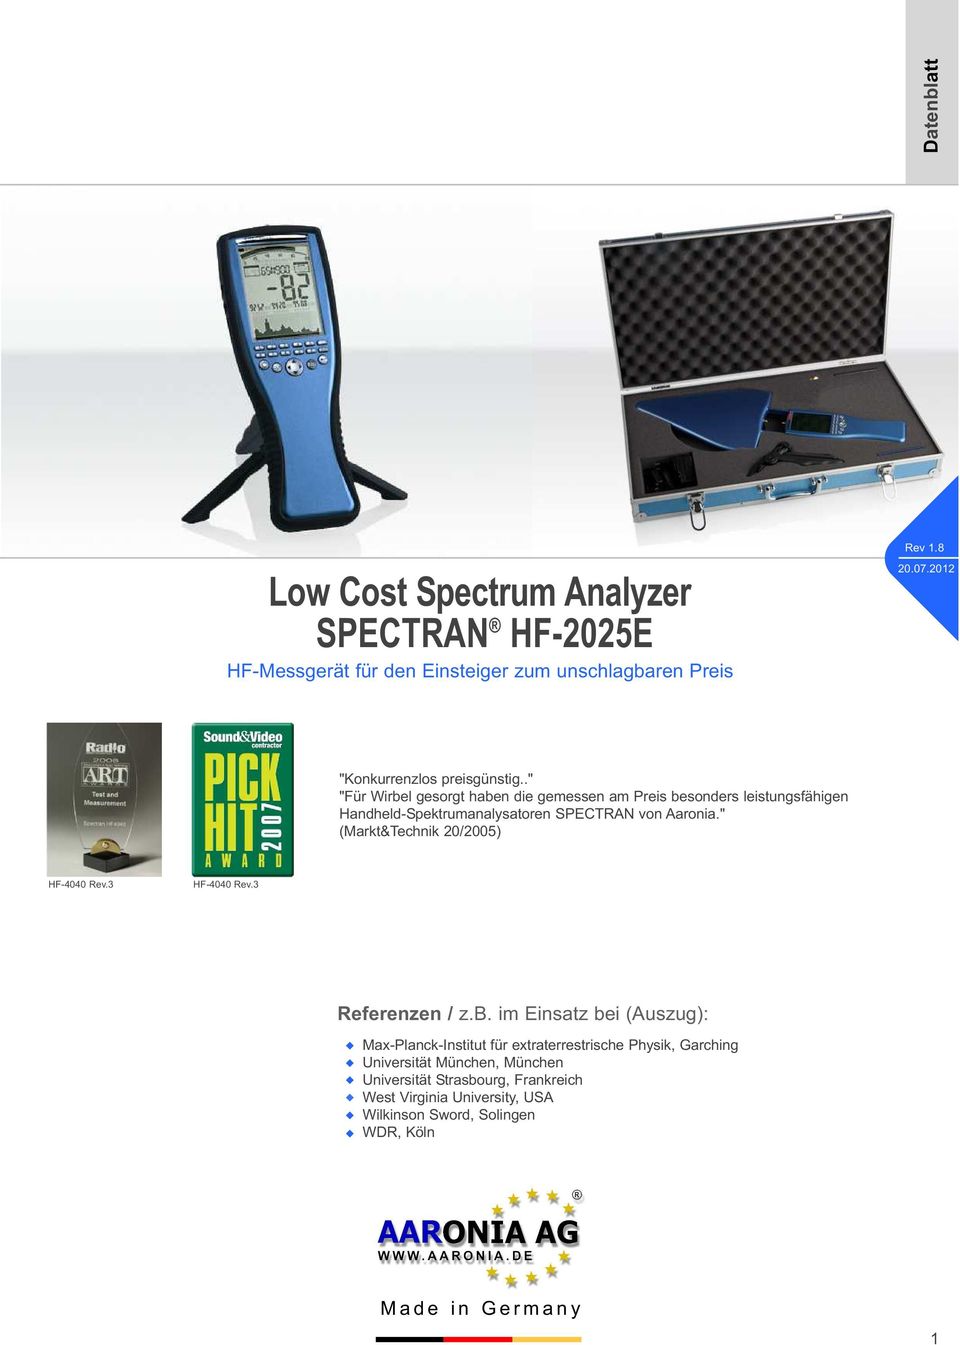 ." "Für Wirbel gesorgt haben die gemessen am Preis besonders leistungsfähigen HandheldSpektrumanalysatoren SPECTRAN von Aaronia.